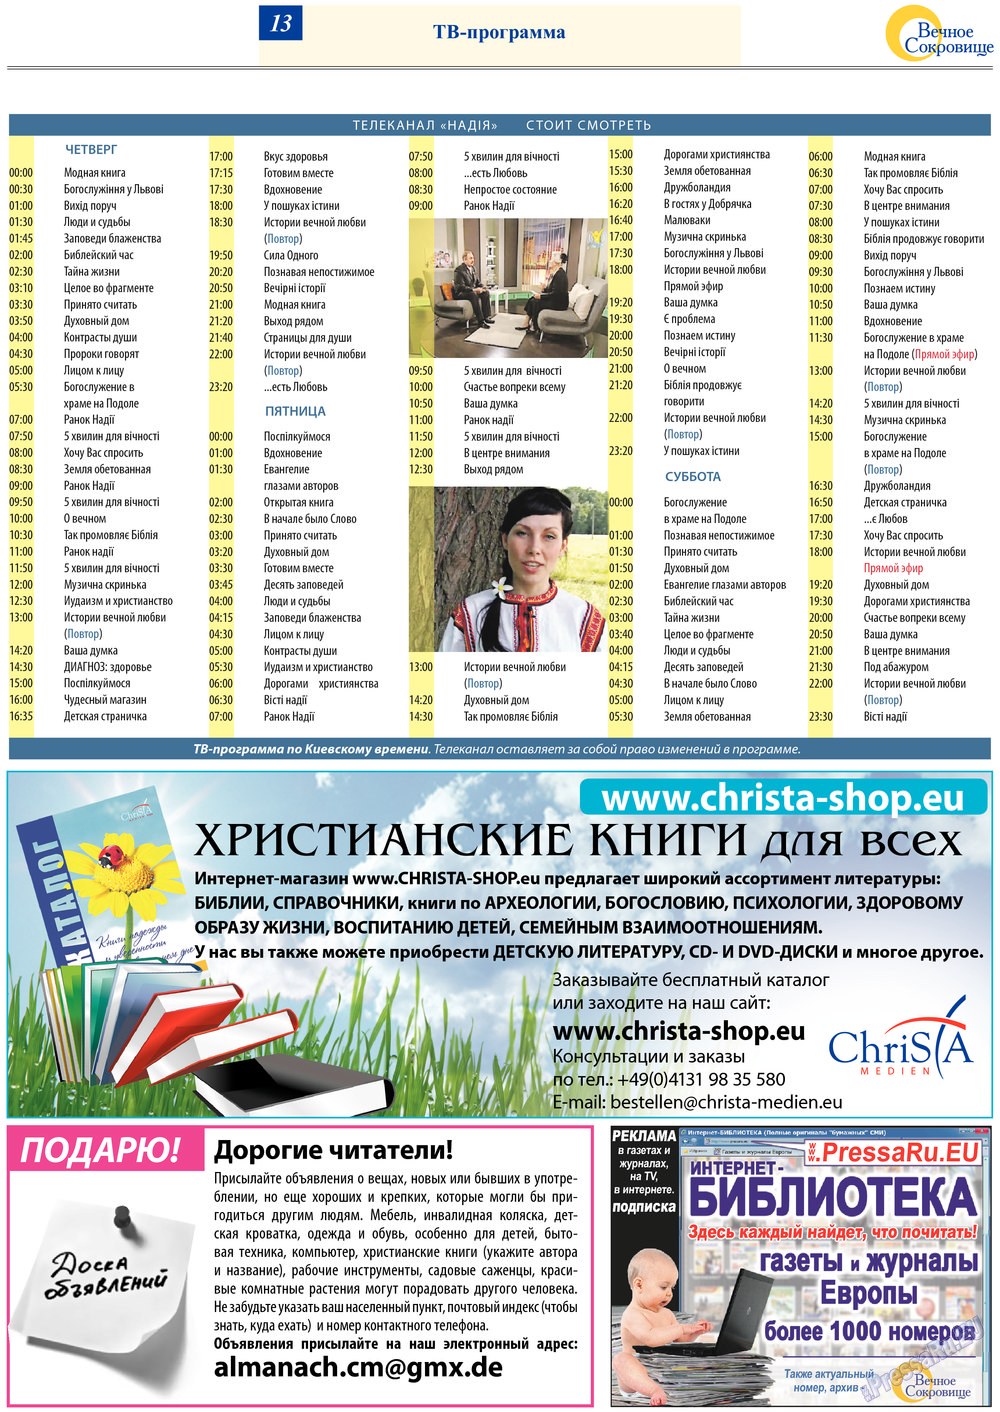 Вечное сокровище (газета). 2013 год, номер 2, стр. 13